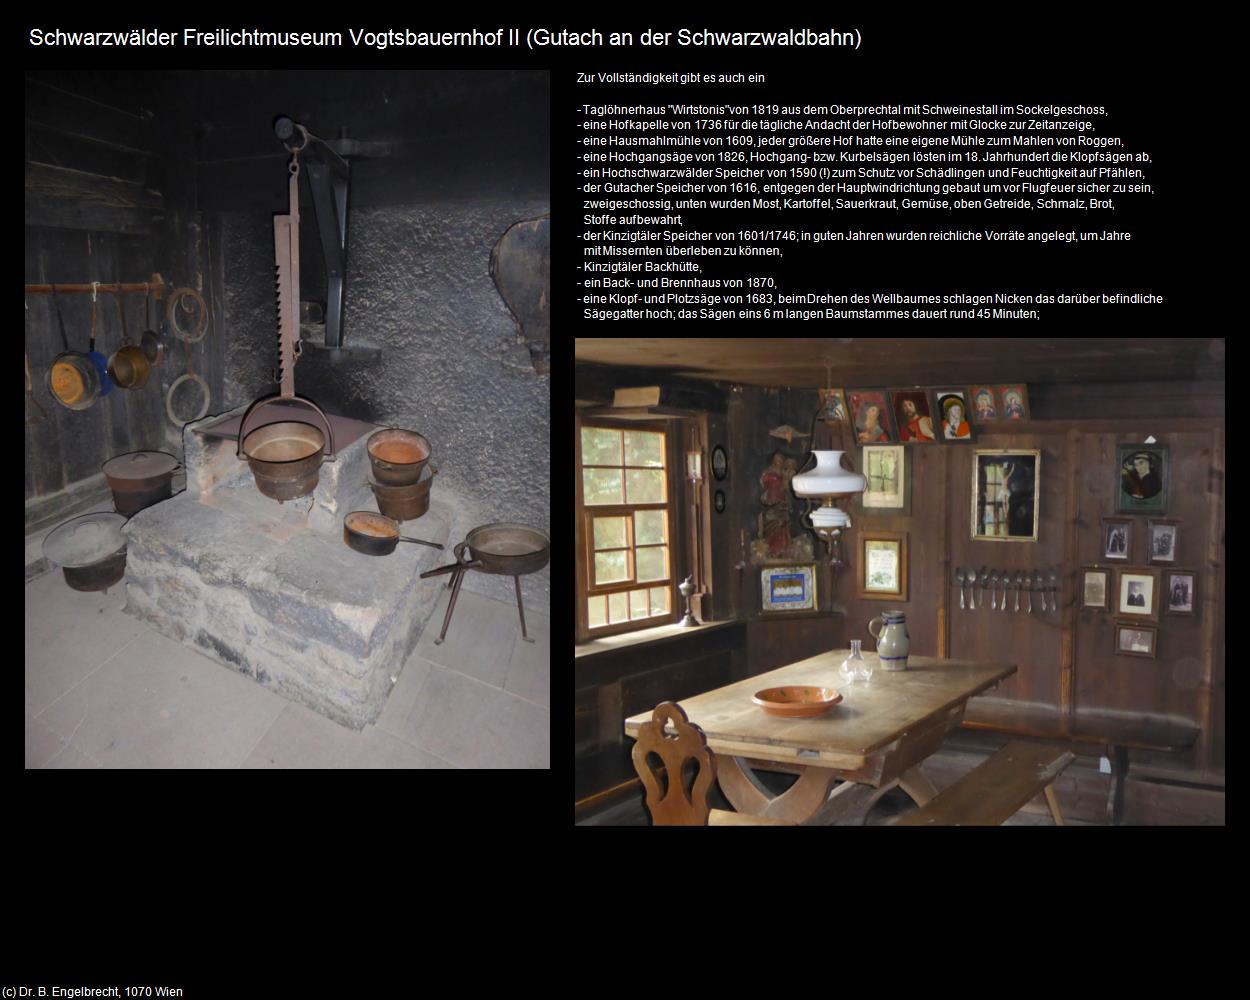 Schwarzwälder Freilichtmuseum Vogtsbauernhof II (Gutach an der Schwarzwaldbahn) in Kulturatlas-BADEN-WÜRTTEMBERG